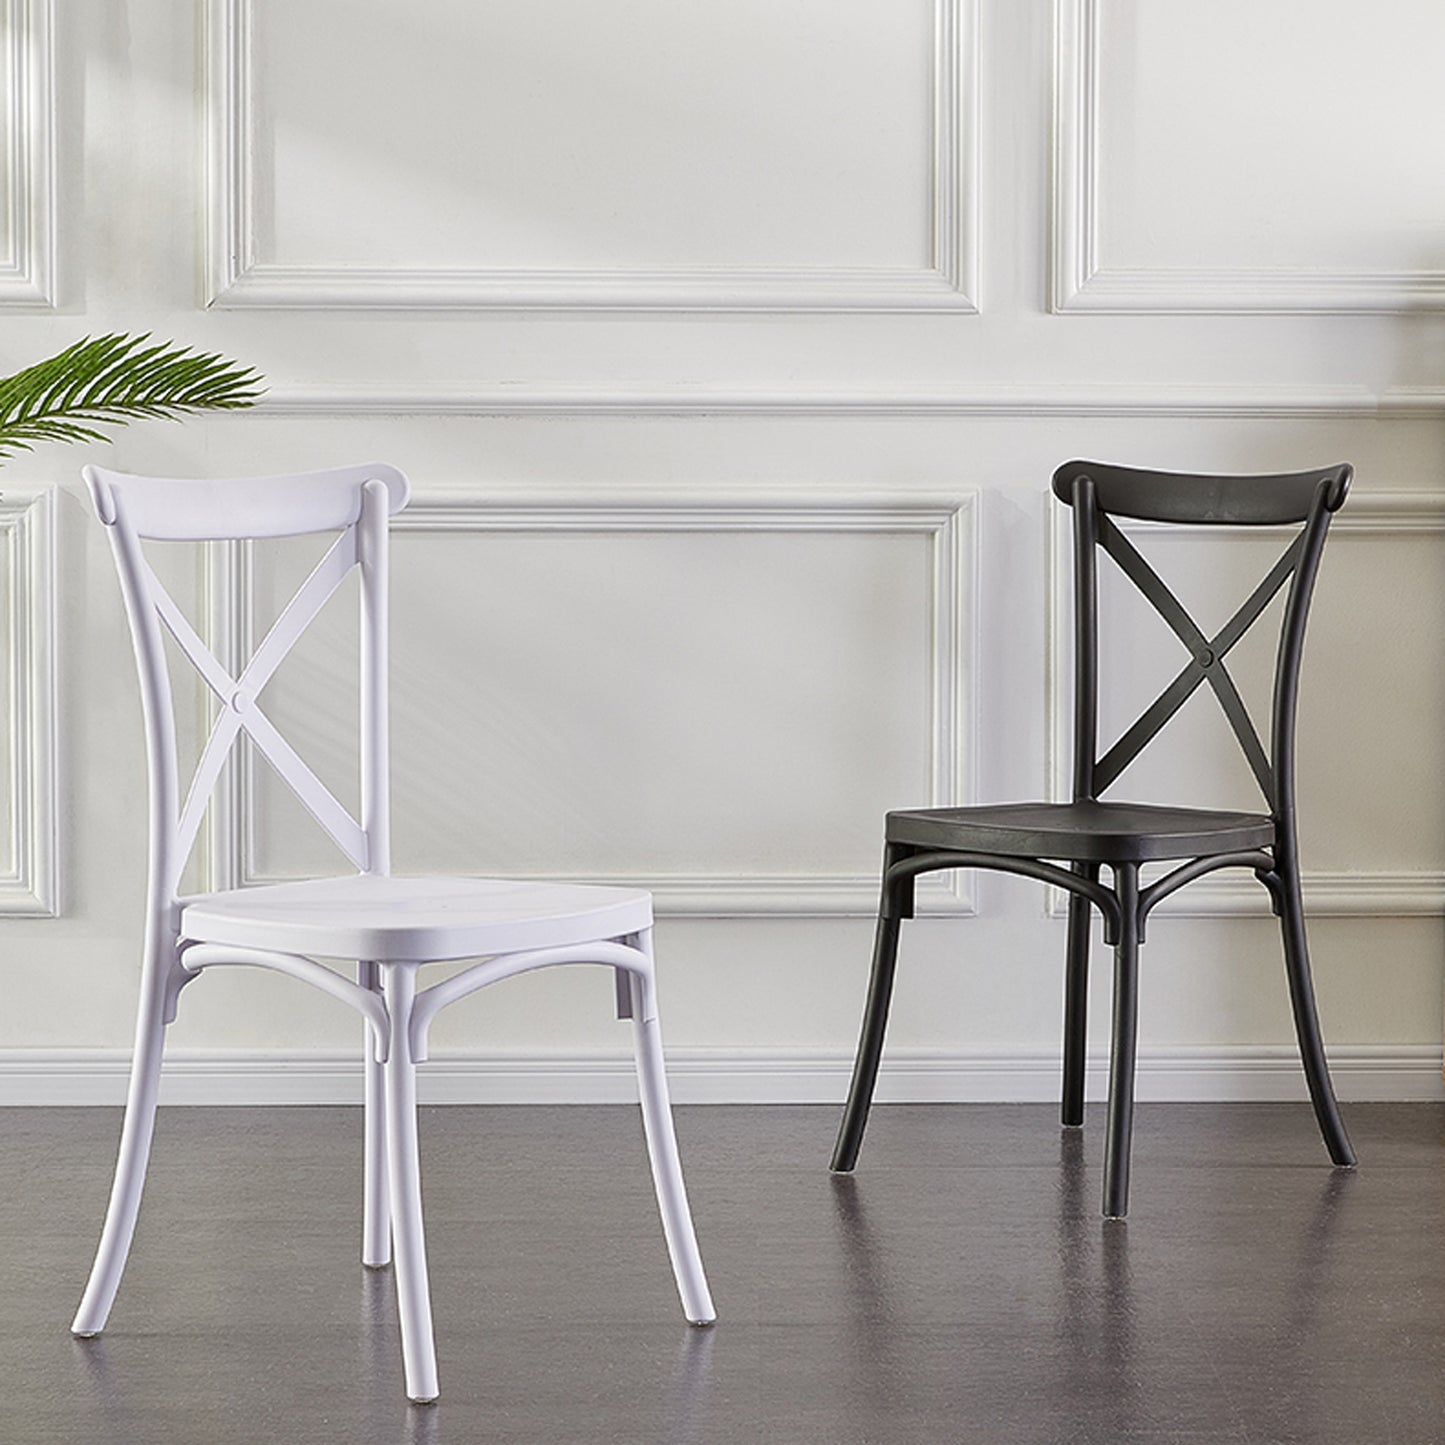 Lot de 4 chaises blanches style BISTROT empilables en plastique polypropylène